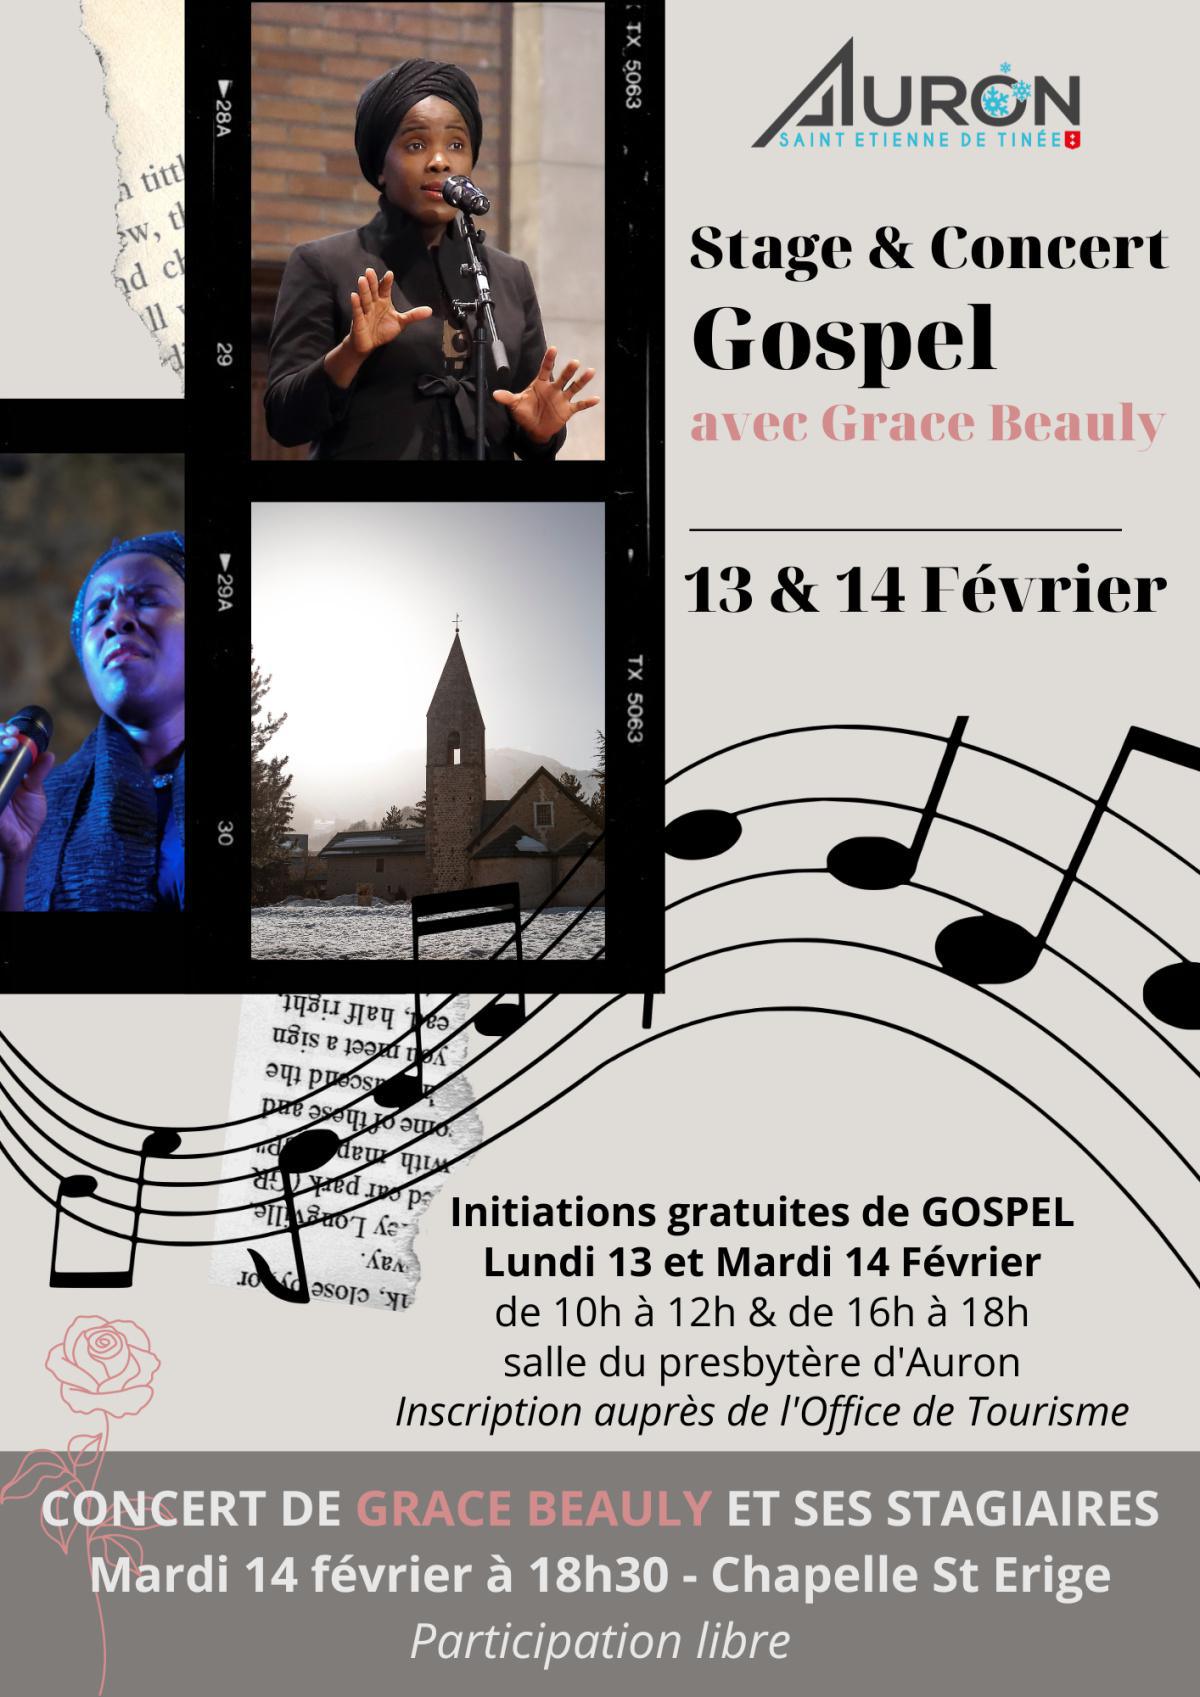 Stage et Concert Gospel 13 & 14 février